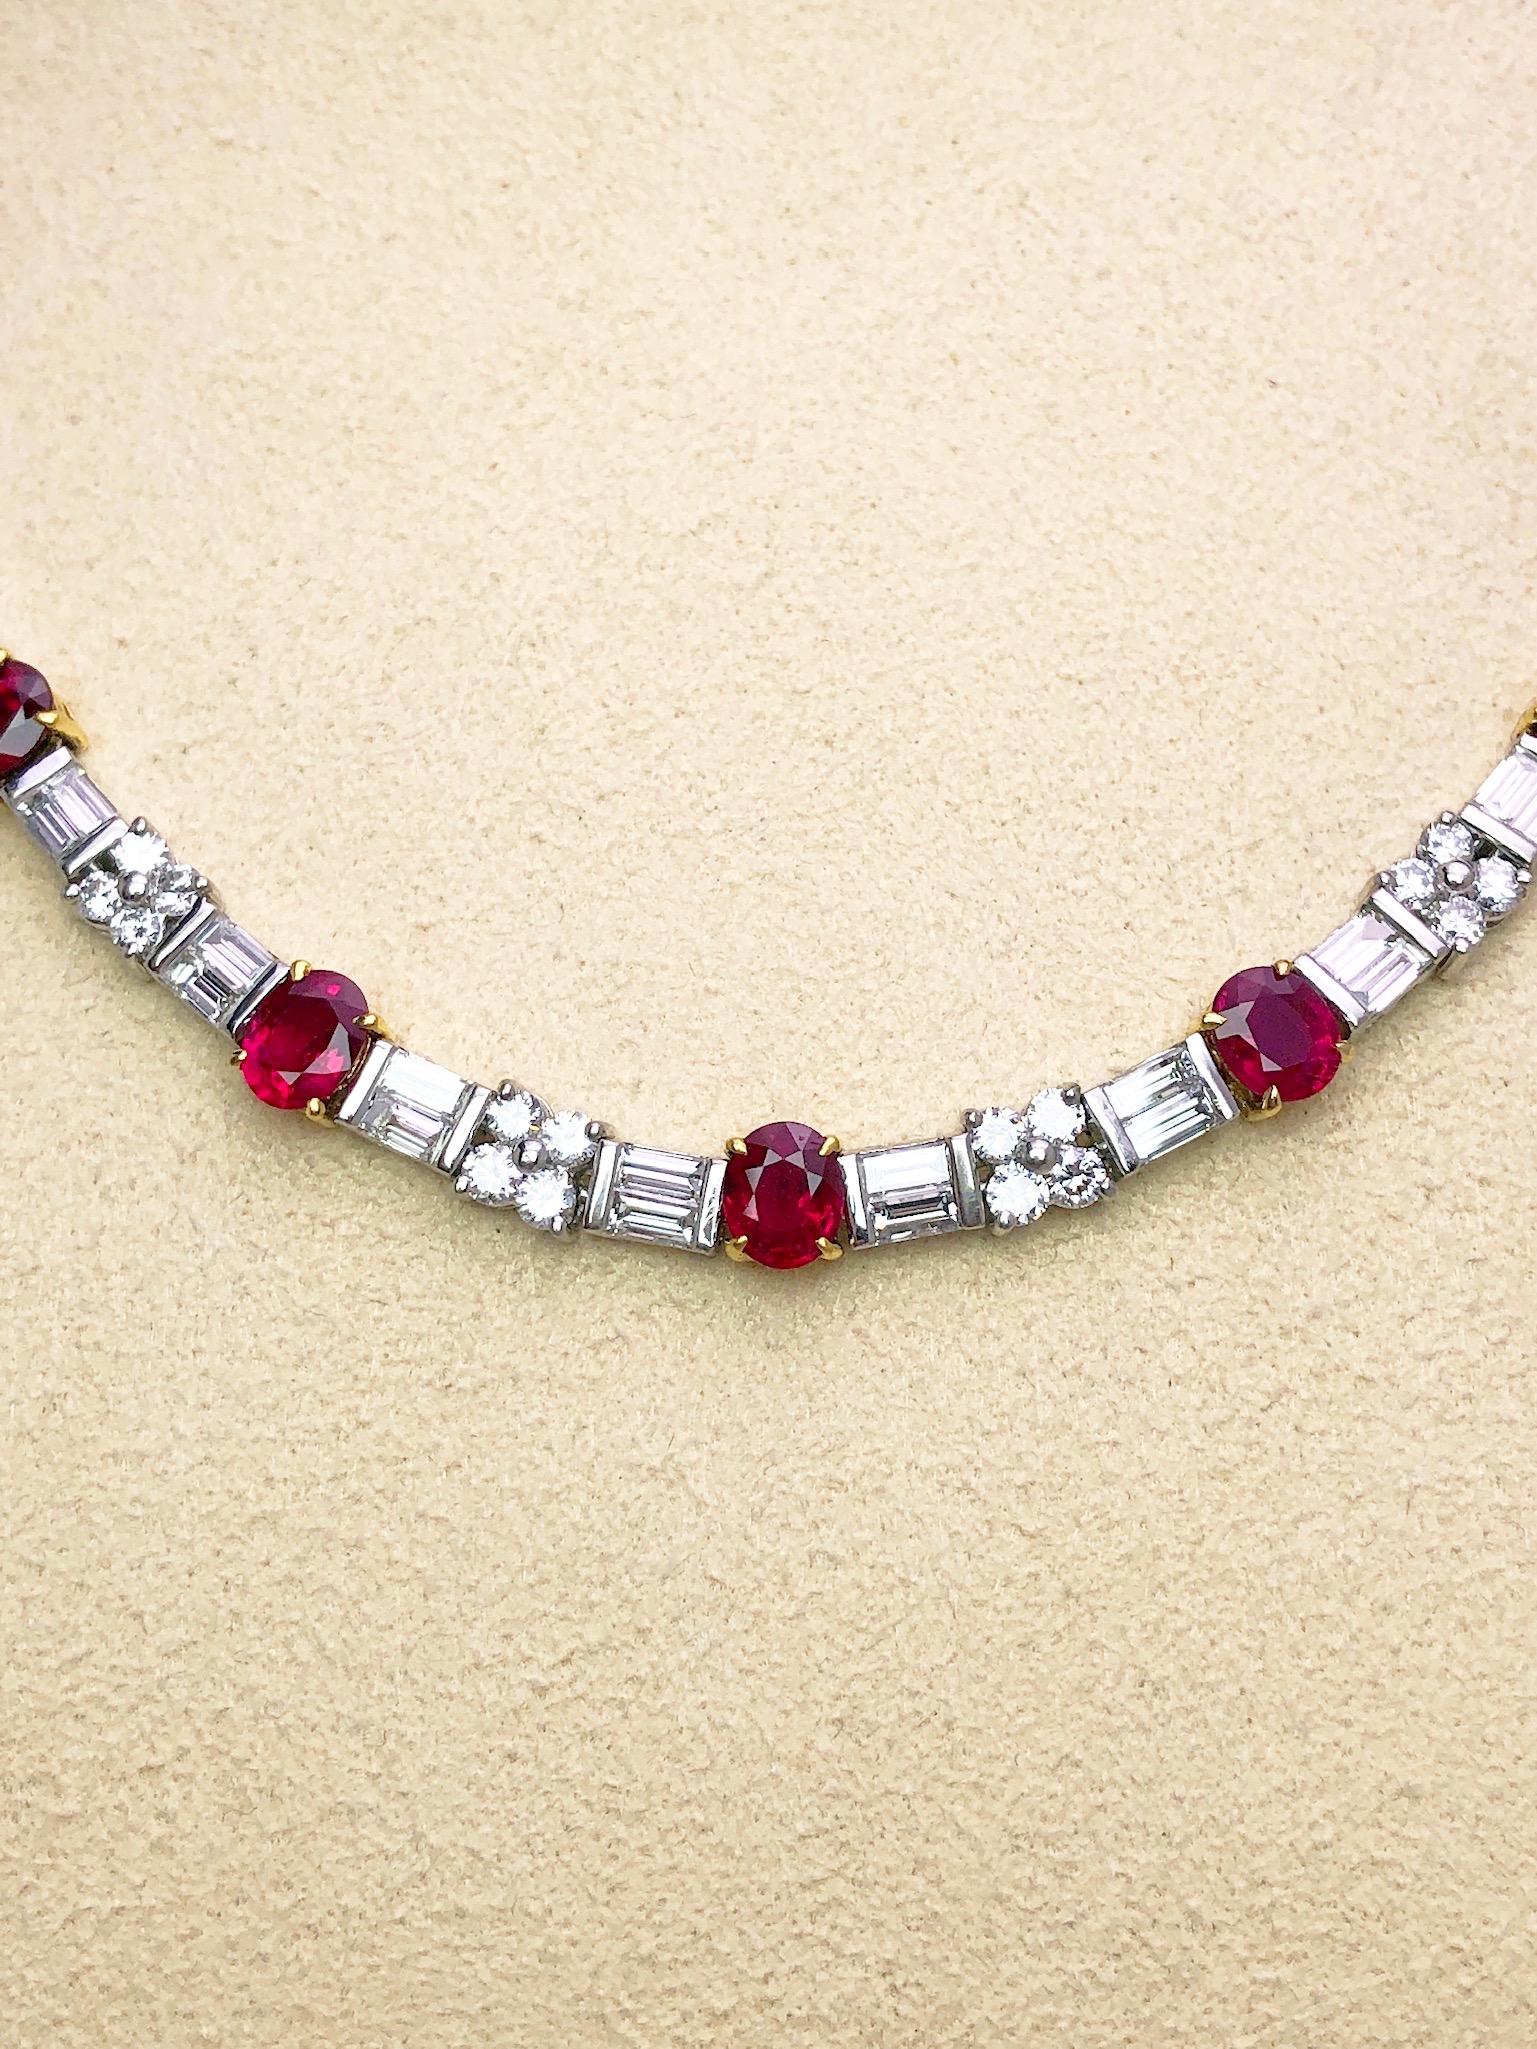 Platin-Halskette, abwechselnd mit 20 ovalen Rubinen in 18 kt. Gelbgold gefasst. Zwischen den Rubinen befinden sich 4 Diamanten im Baguetteschliff und 4 runde Brillanten, die ein schönes Muster um den Hals bilden. Die Halskette ist 16,5